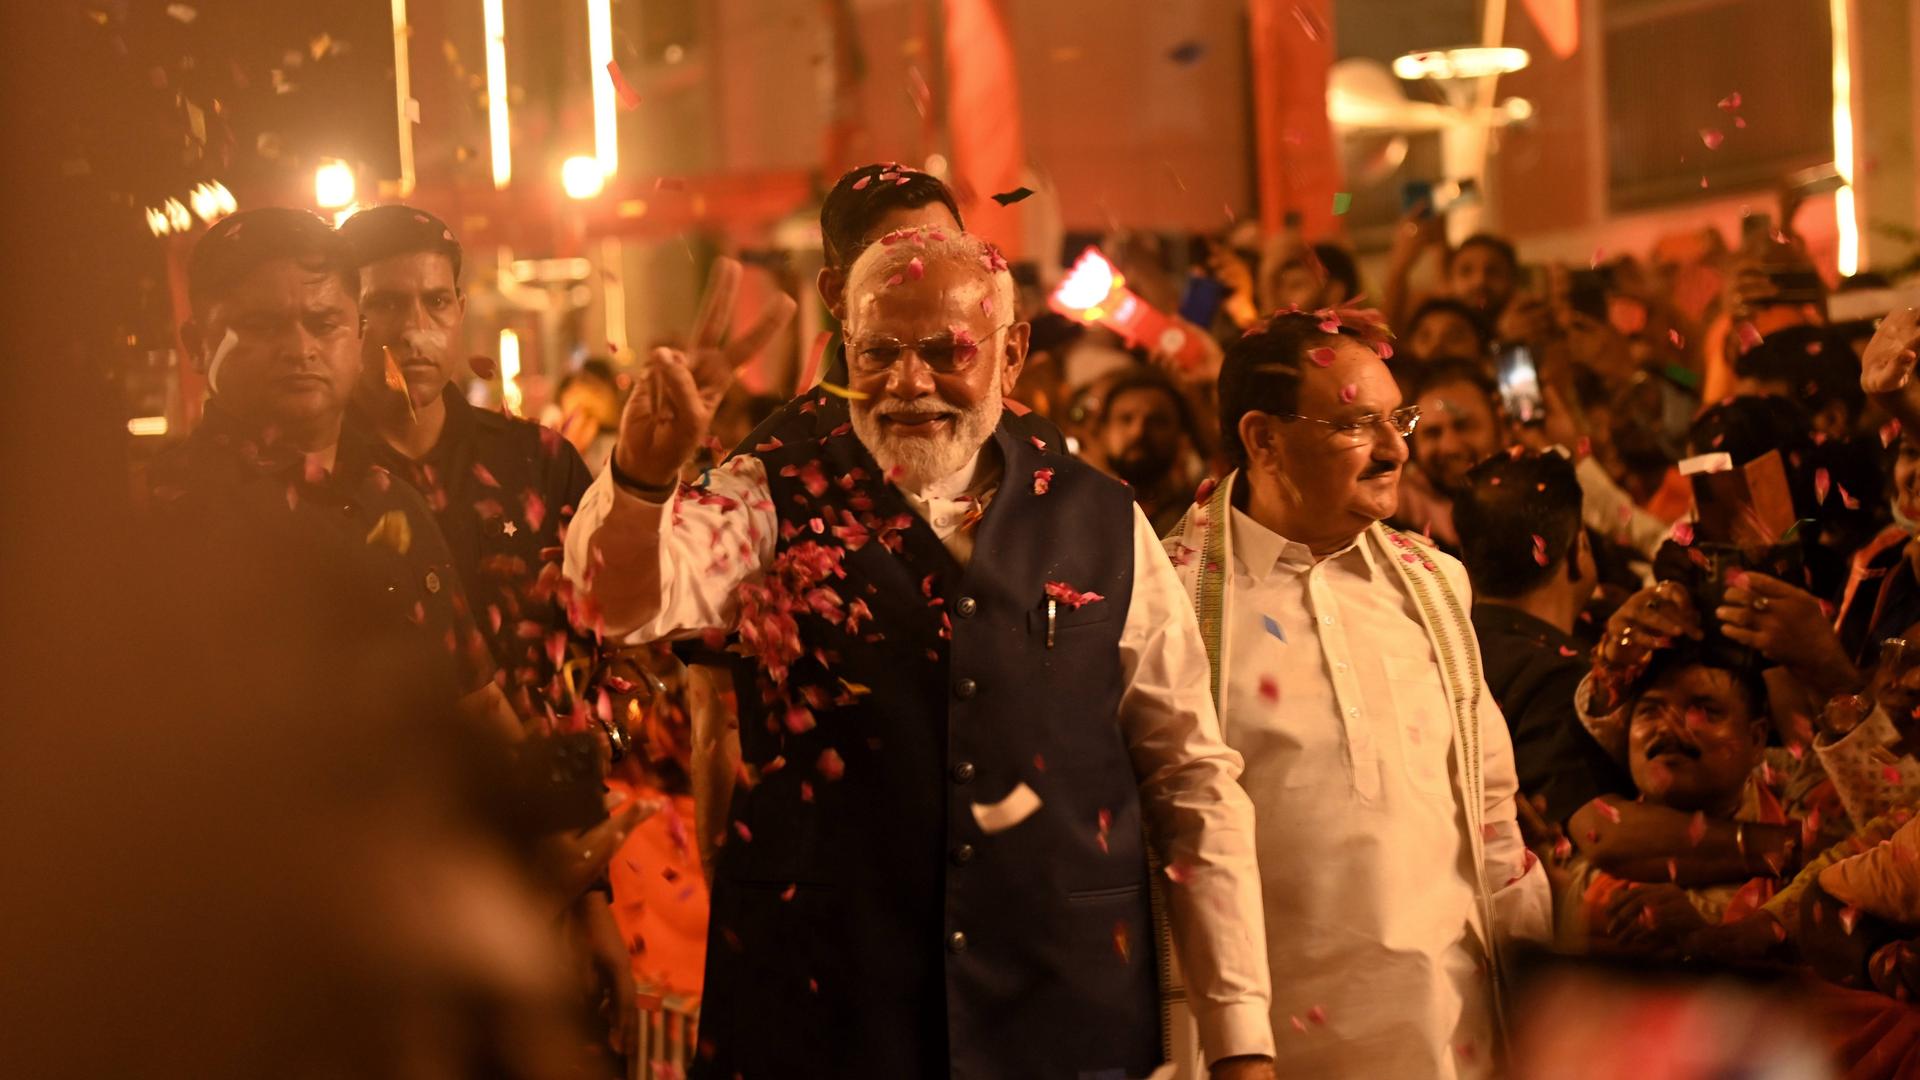 Der indische Premierminister Modi wird in Neu Delhi von seinen Anhängern gefeiert. Er geht eine Straße entlang, am Rand stehen viele Menschen und jubeln.
      